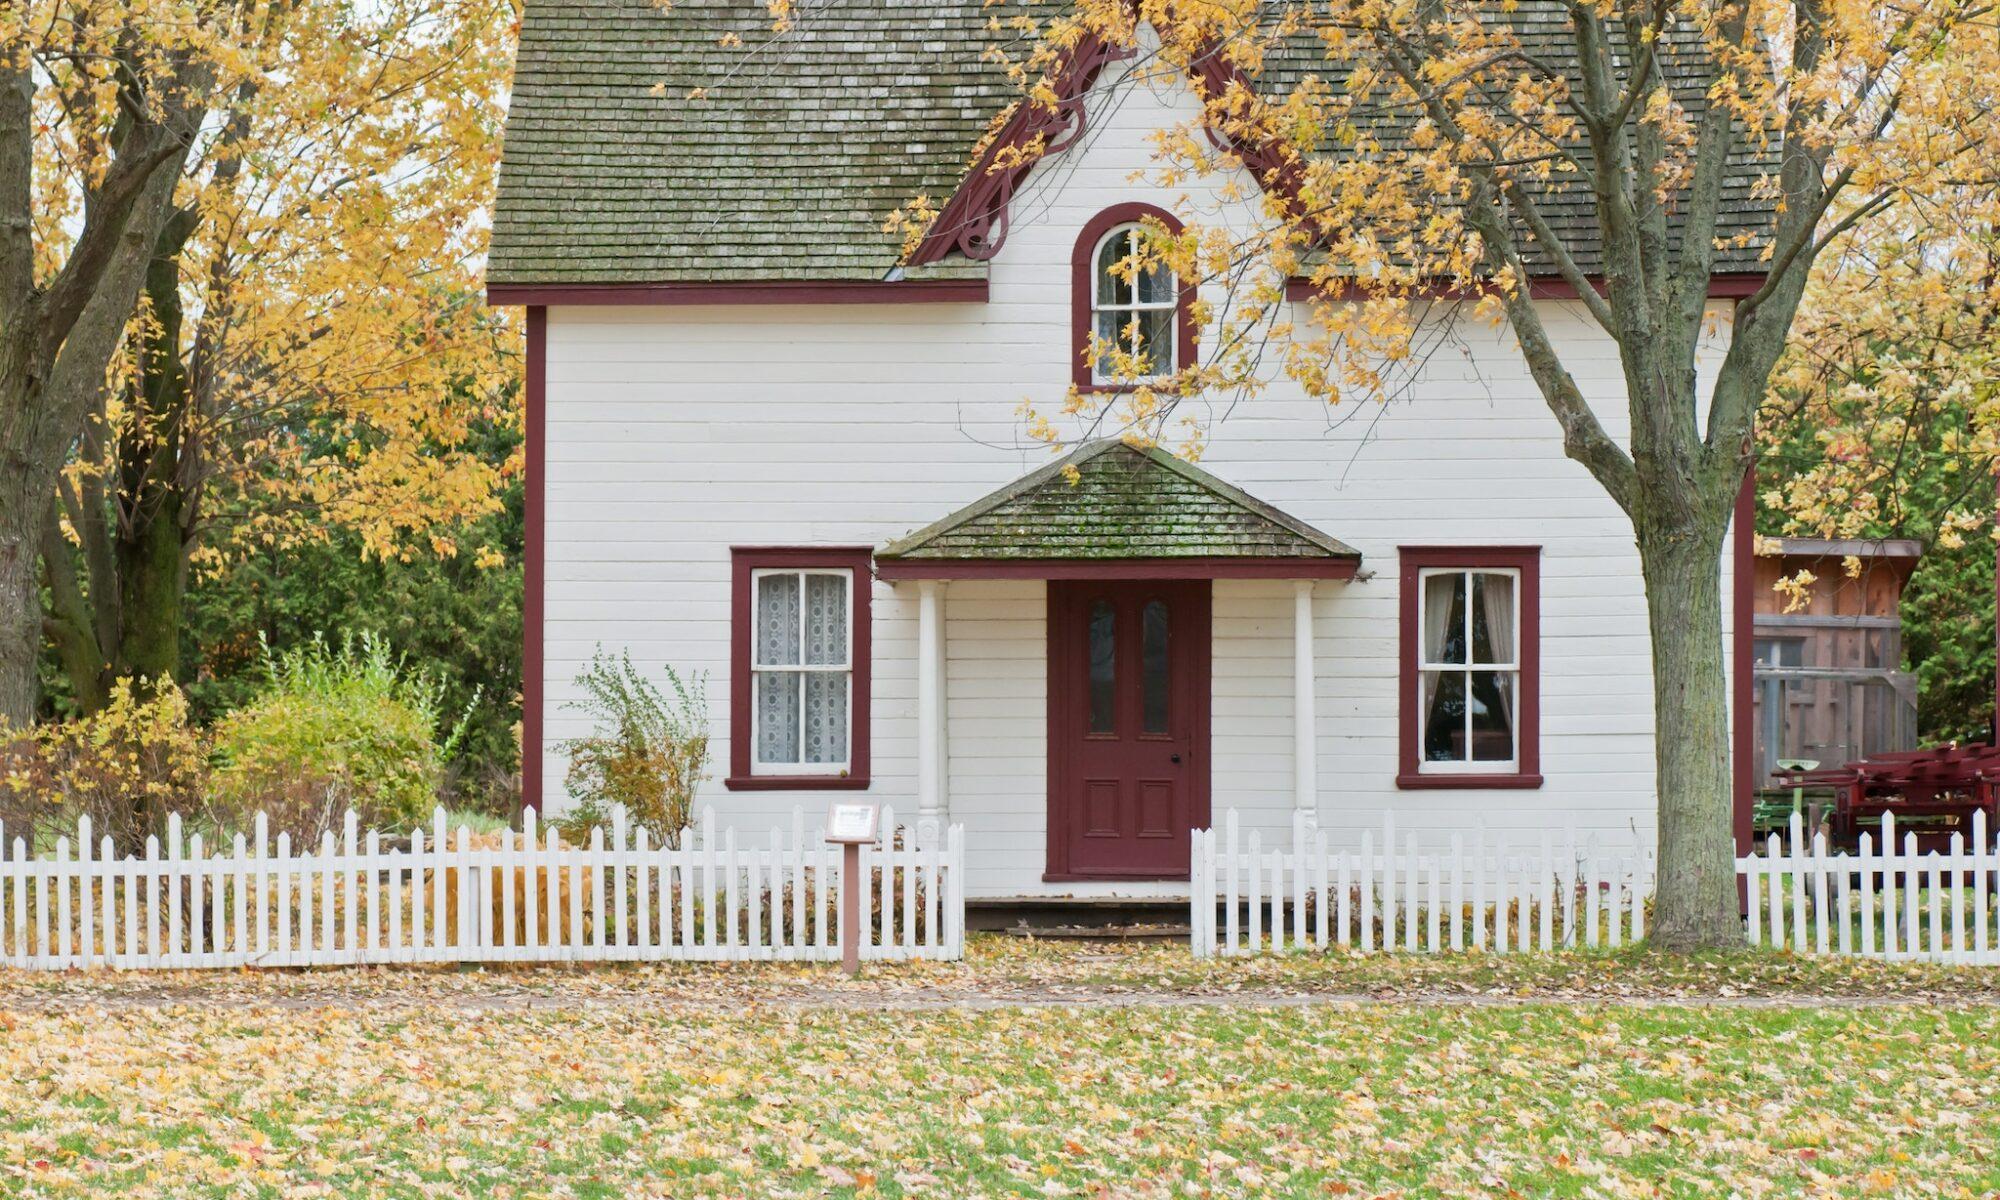 Comment obtenir un prêt immobilier avec un mauvais crédit ?